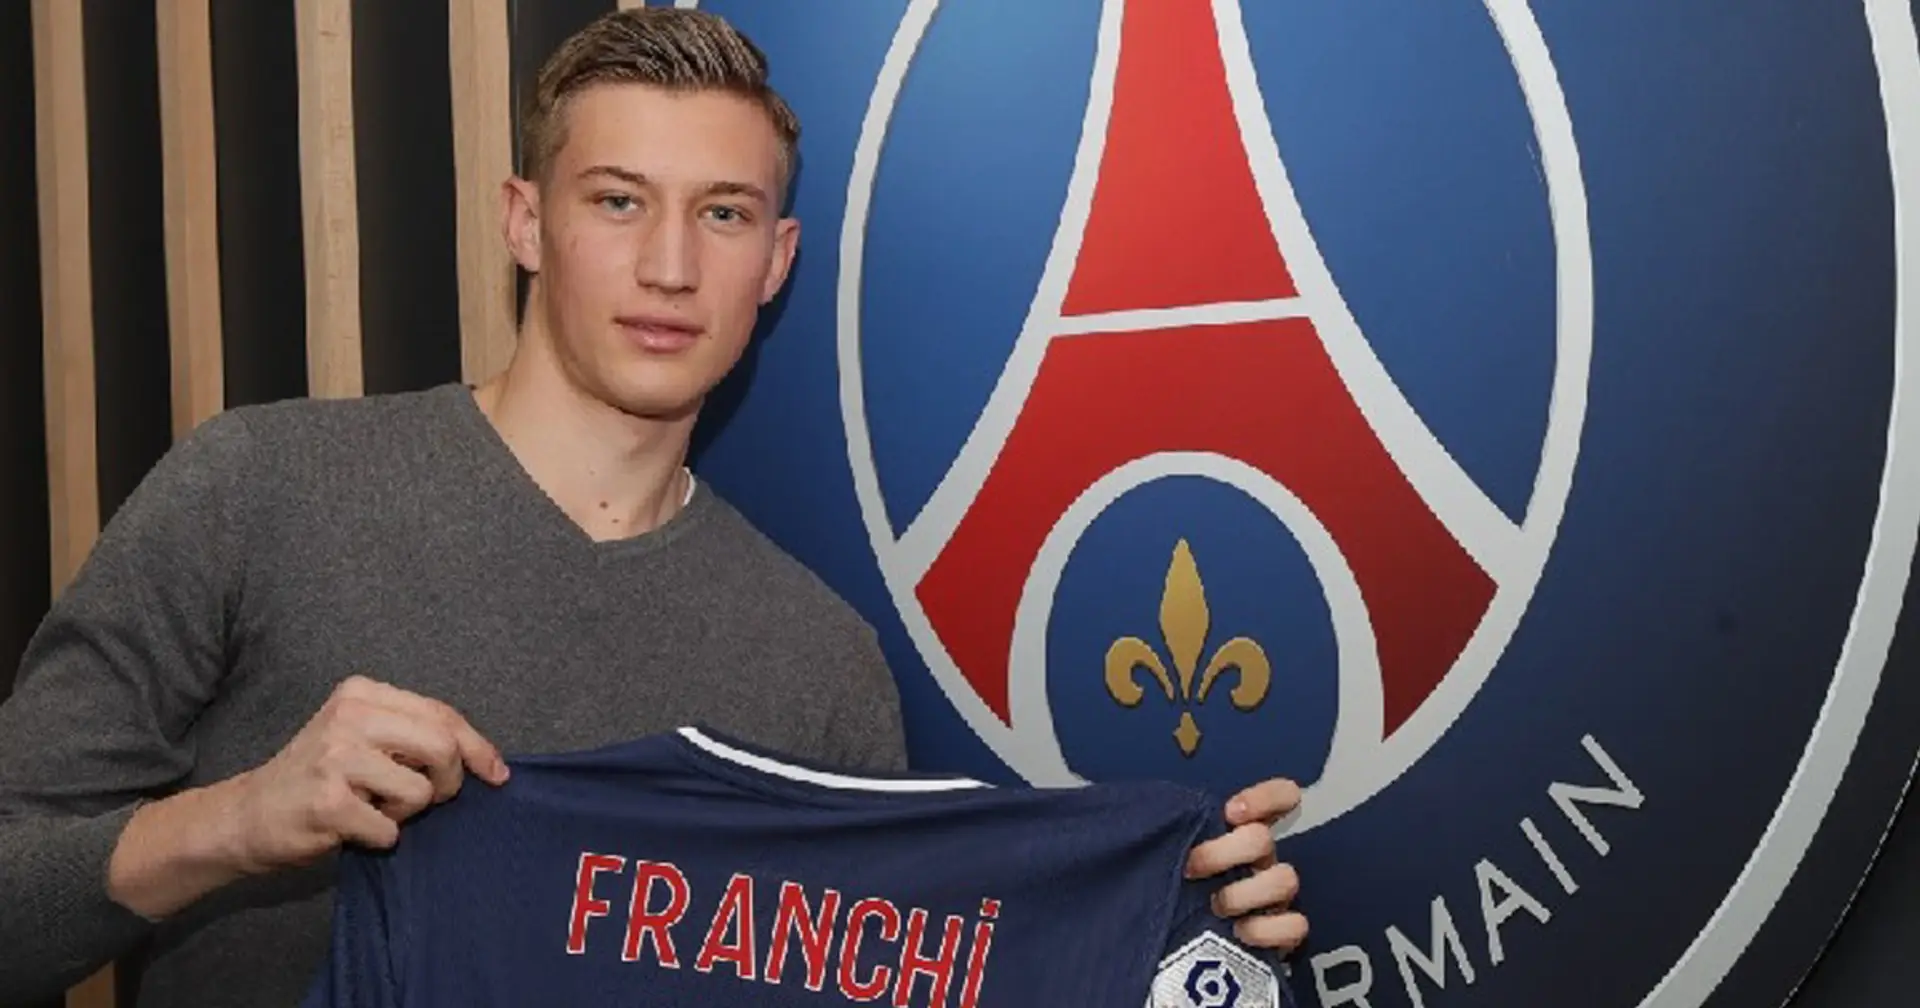 ✍️ Denis Franchi, gardien italien des U19, signe professionnel au PSG